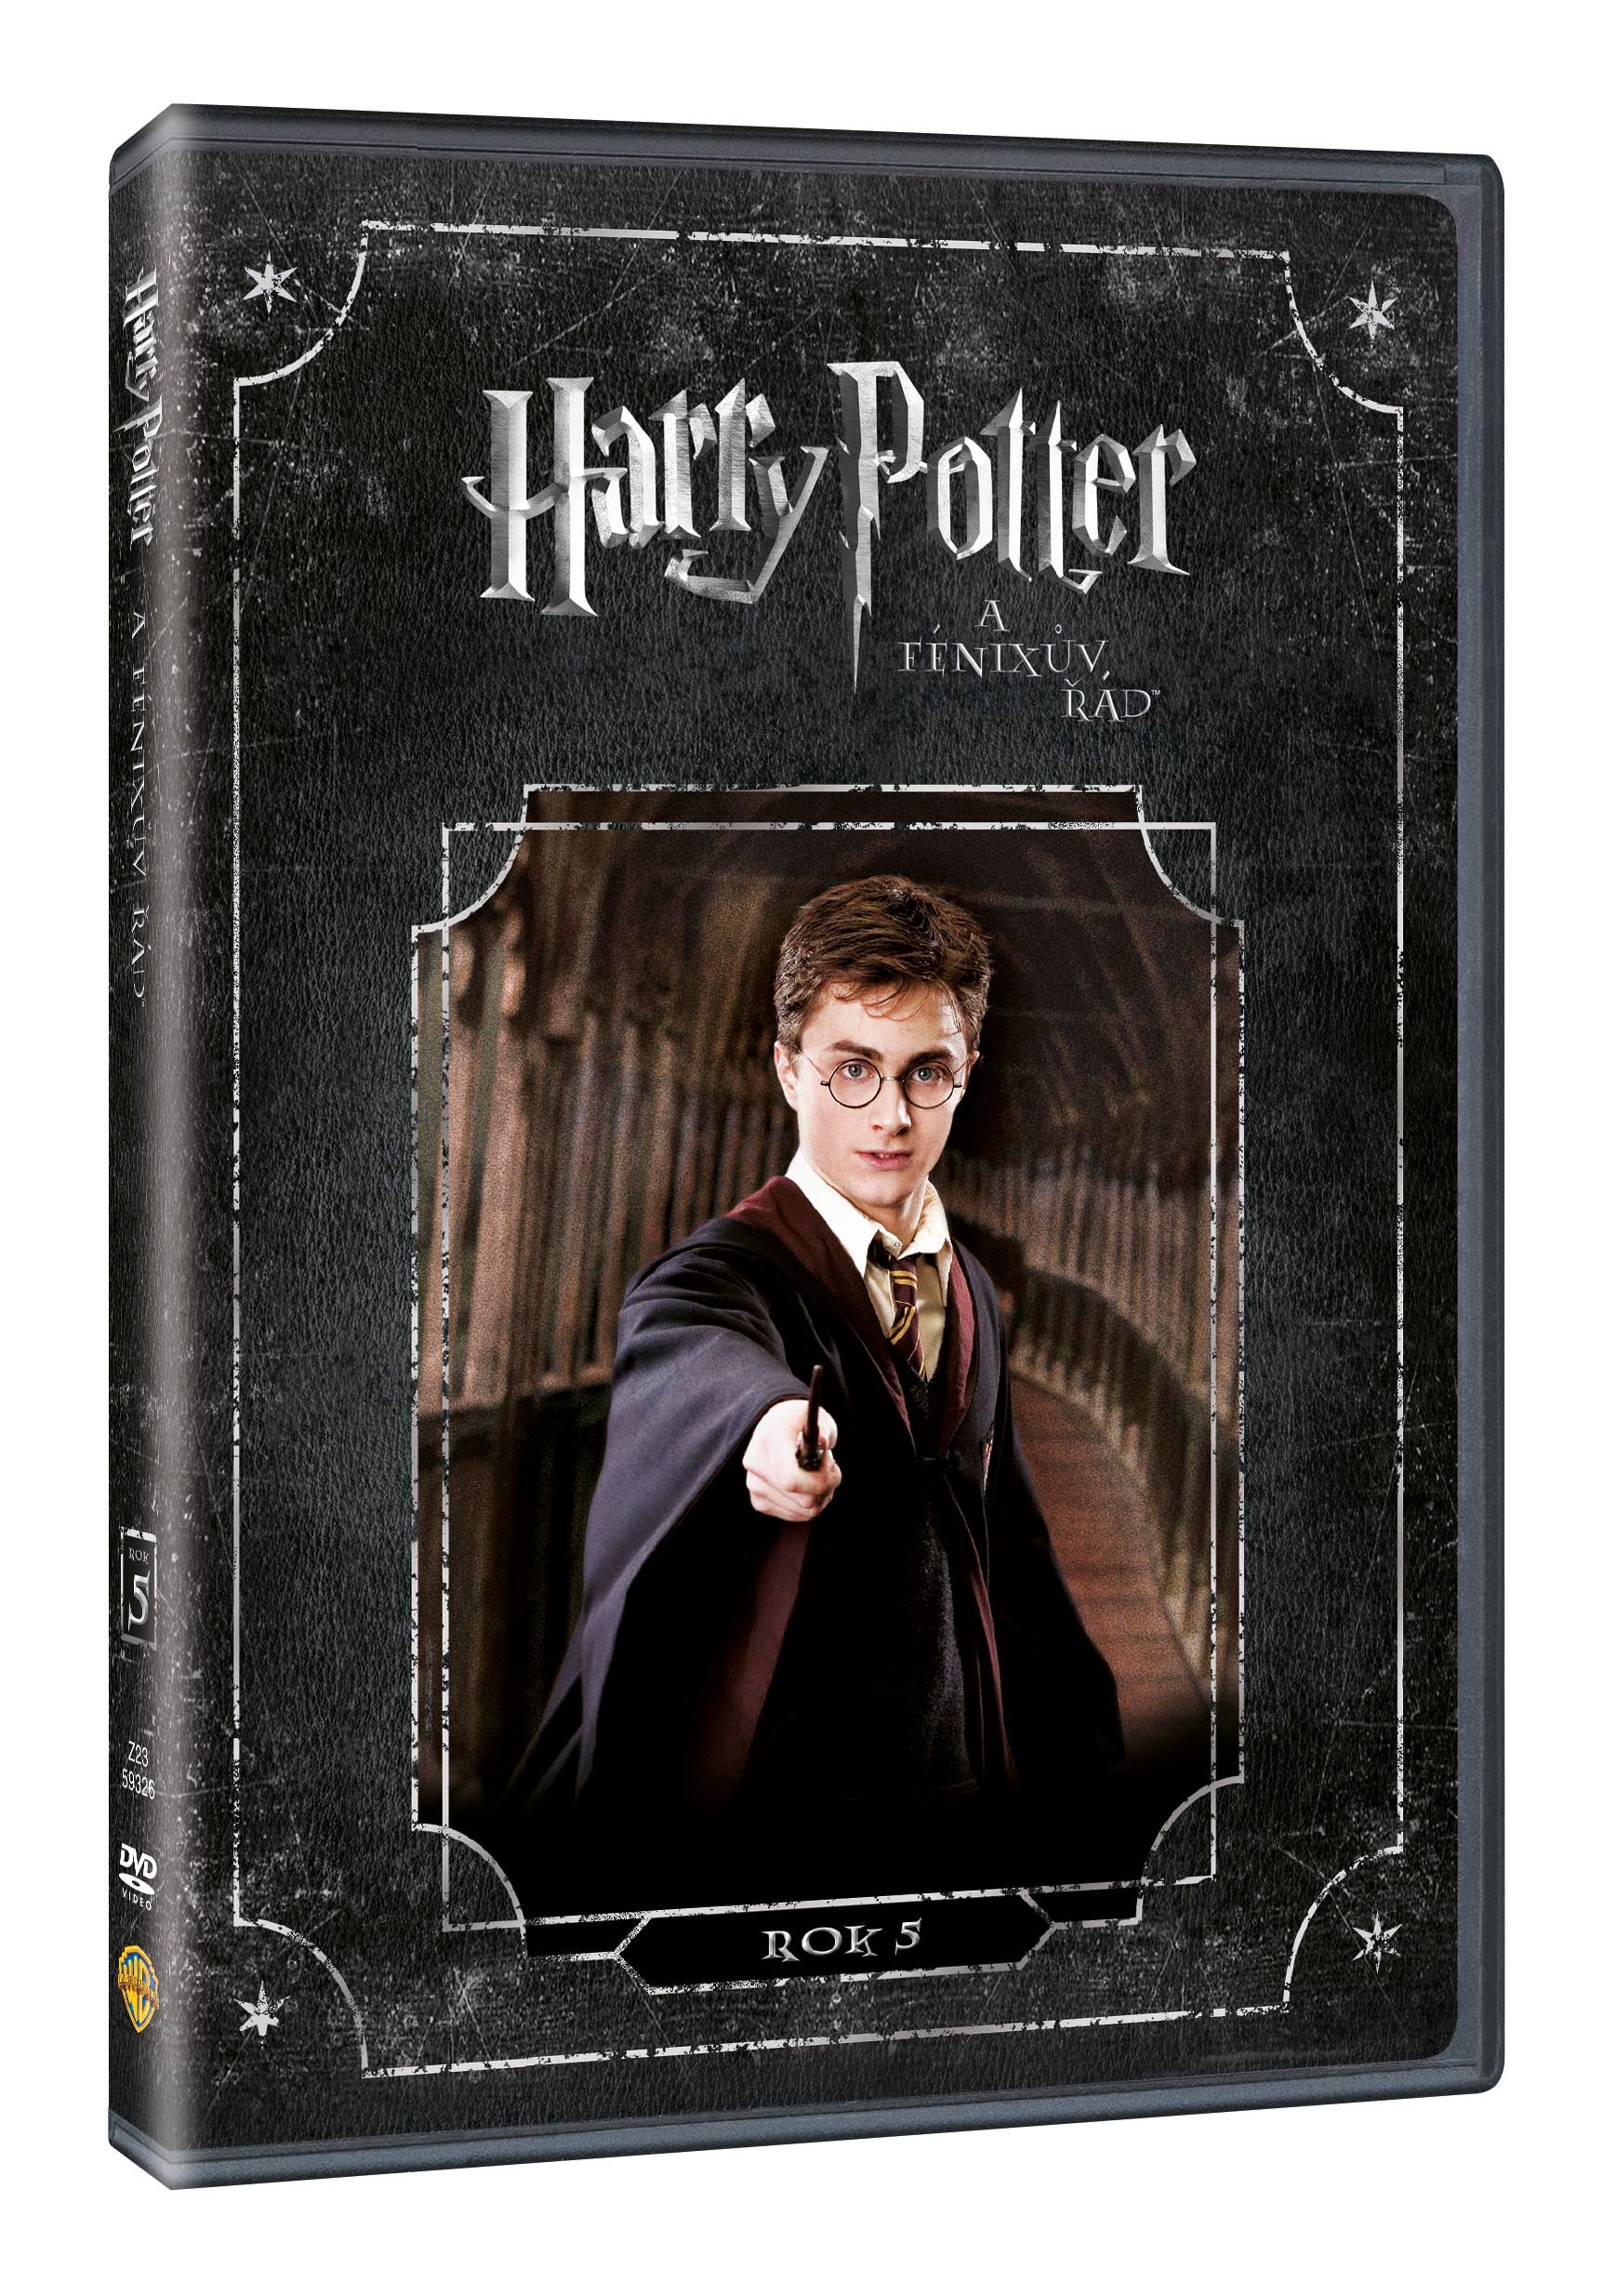 Harry Potter eine Fenixuv Rad DVD / Harry Potter und der Orden des Phönix